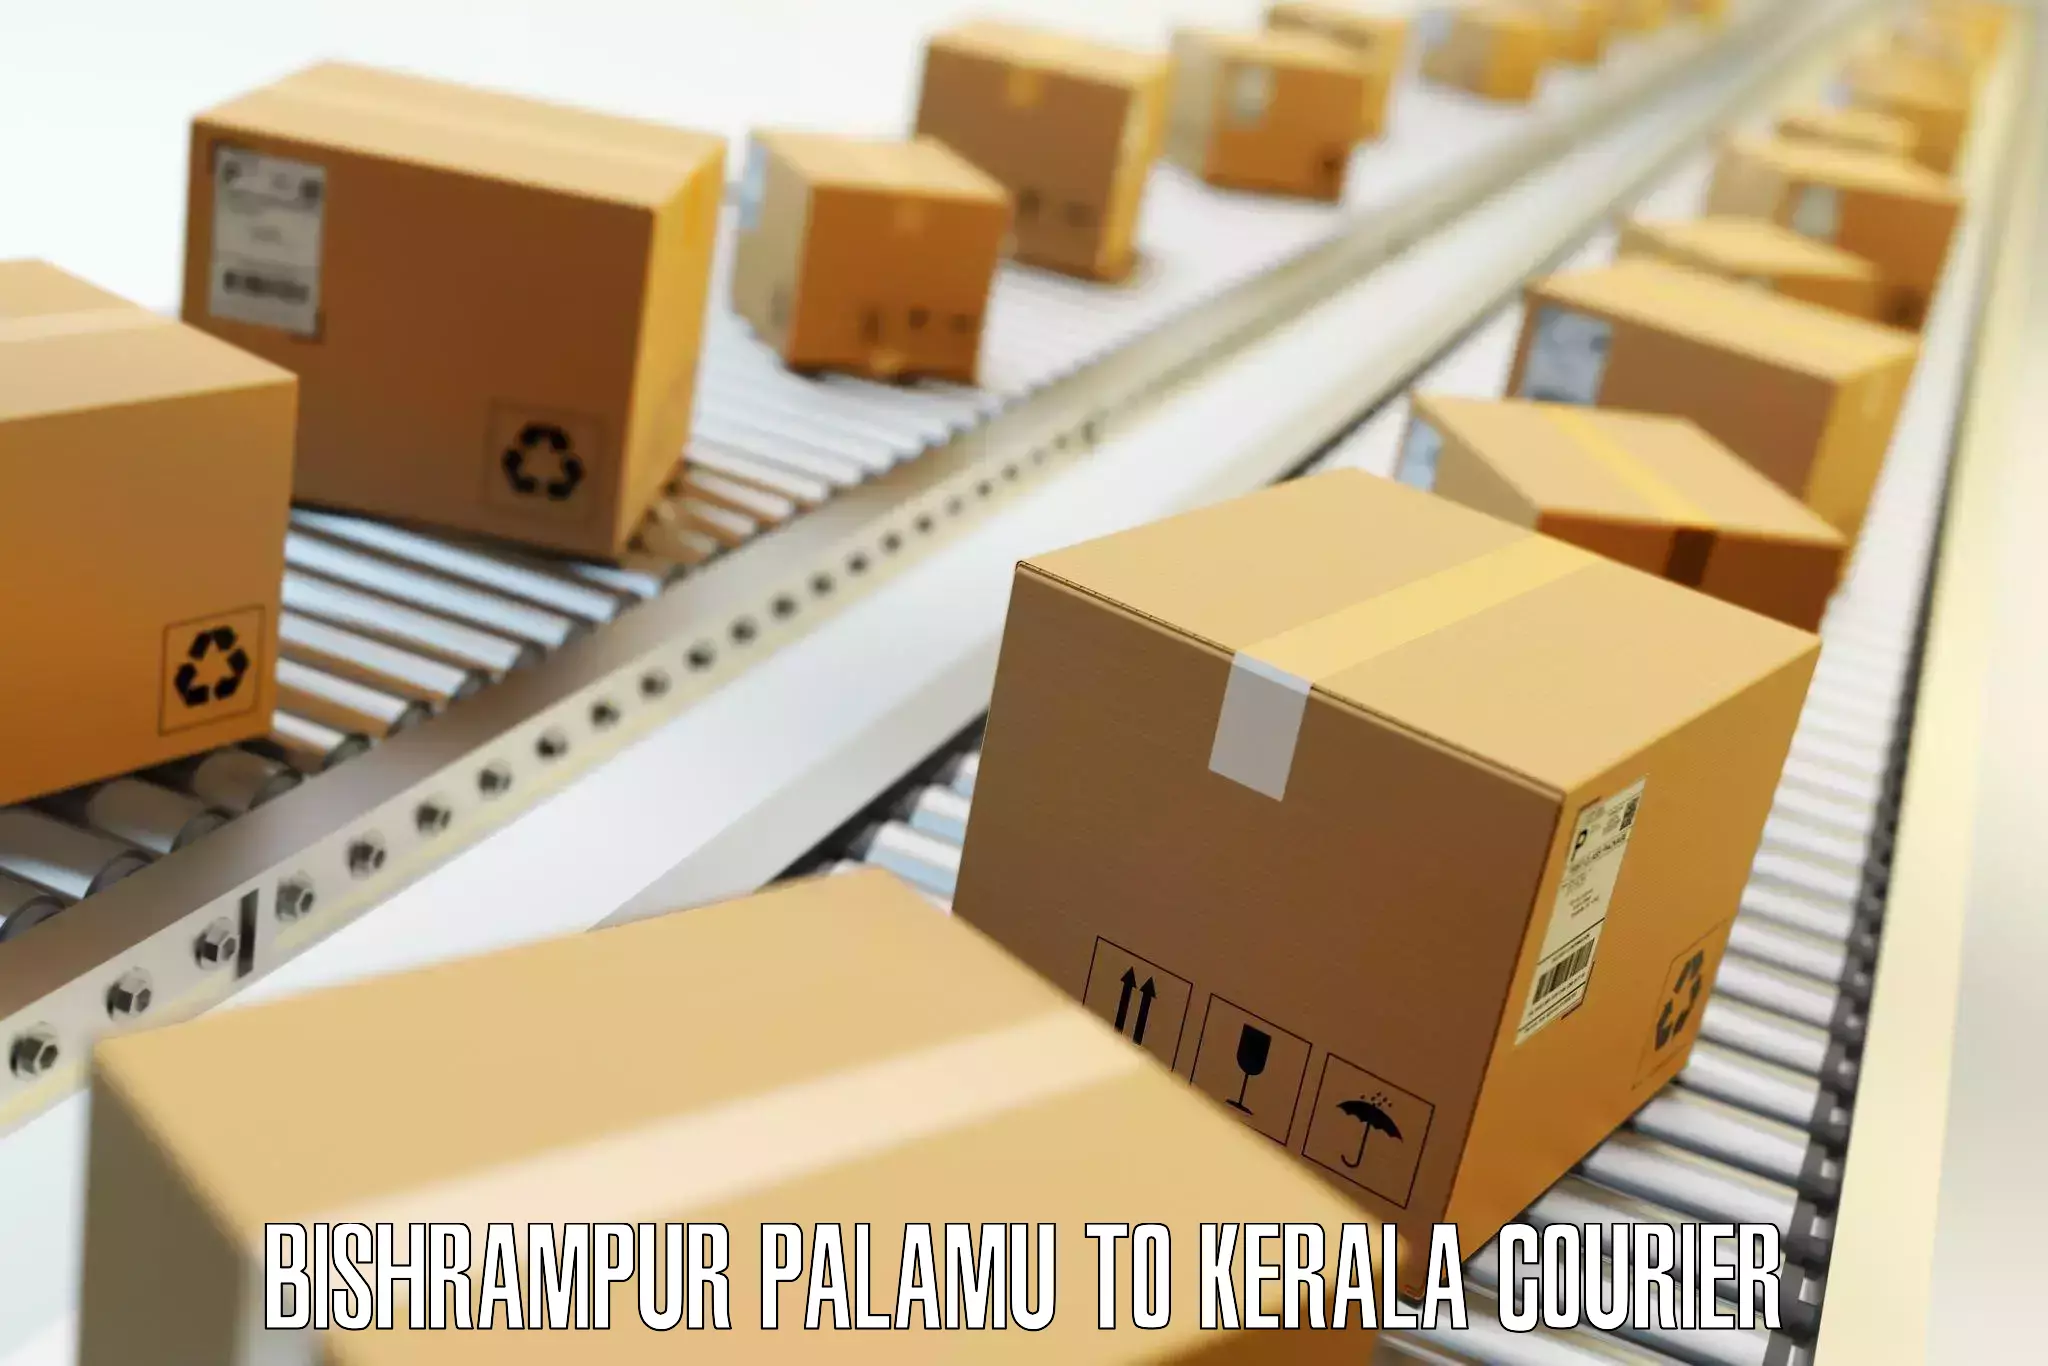 Luggage shipping planner Bishrampur Palamu to Kalpetta